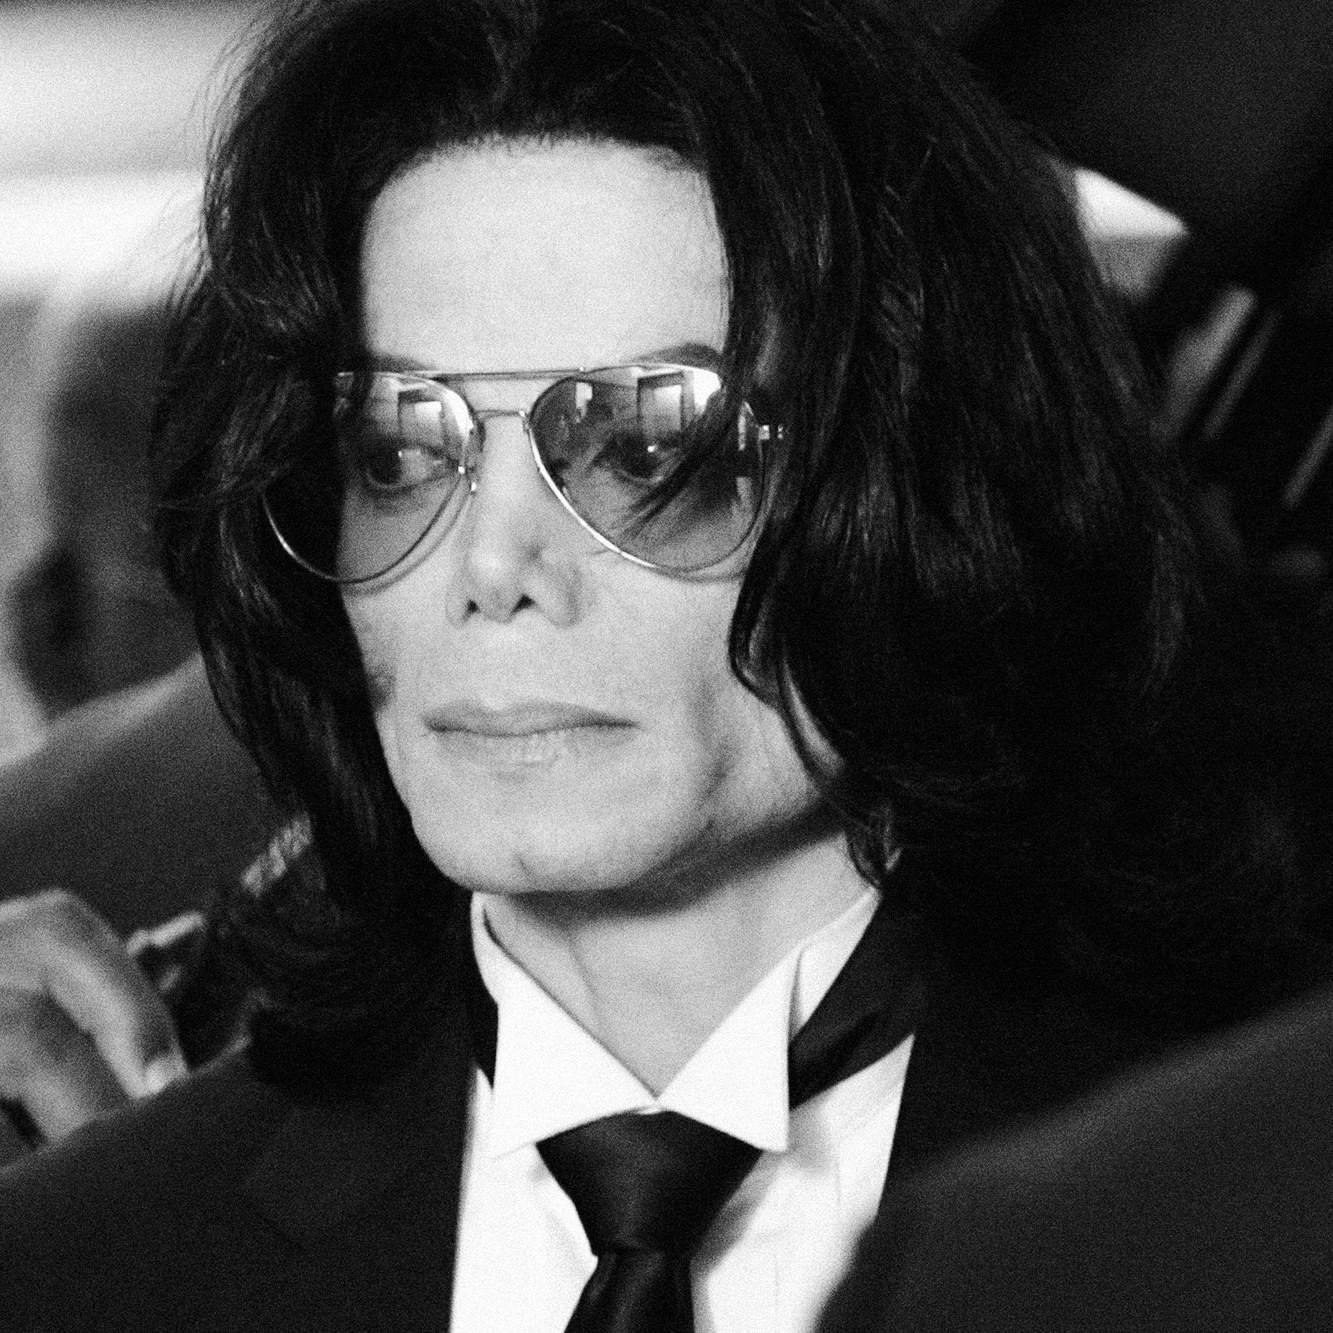 Michael Jackson ar fi împlinit 61 de ani. Acestea sunt cele mai tari piese cântate de el!